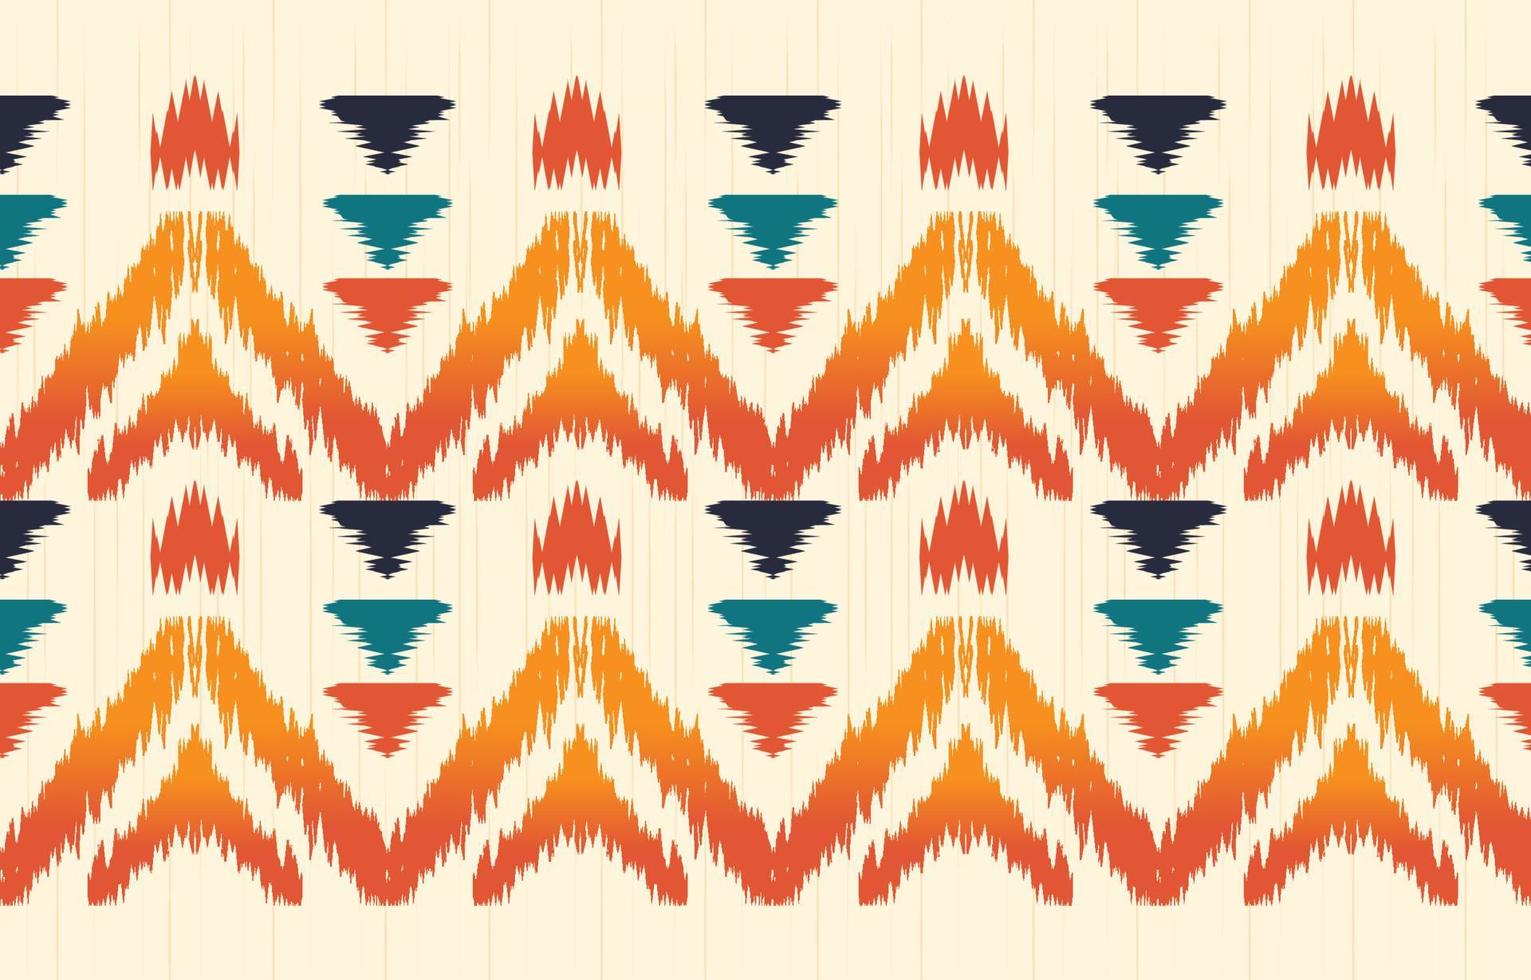 hermoso arte abstracto étnico ikat. patrón impecable en estilo tribal, bordado folclórico y mexicano. impresión de ornamento de arte geométrico azteca. diseño para moqueta, papel pintado, envoltura, tela, cubierta. vector